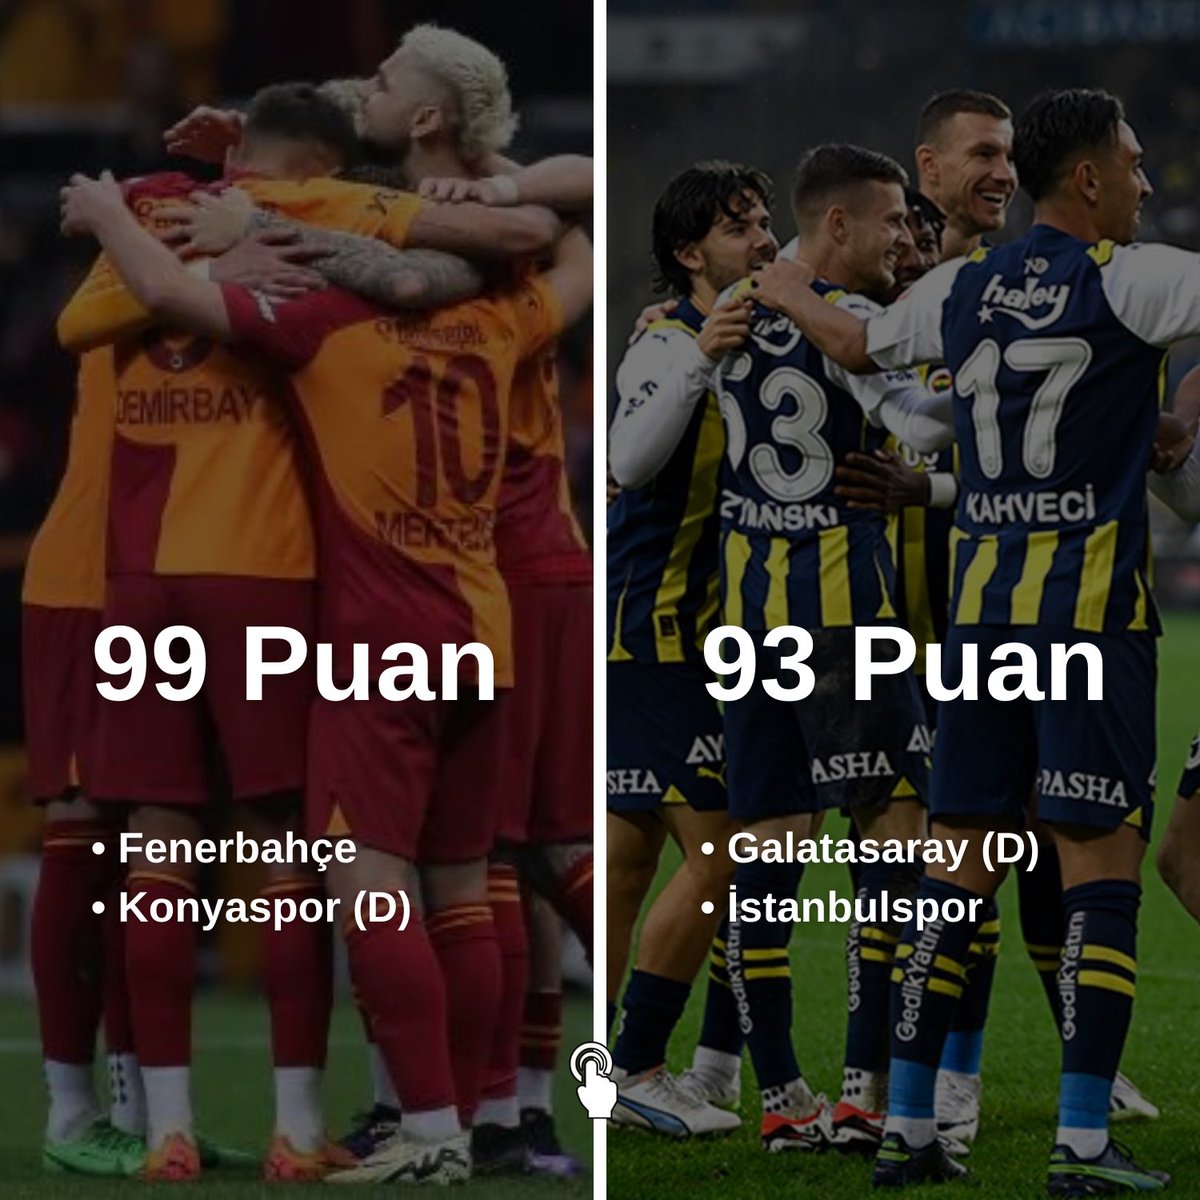 Şampiyonluk yarışında son durum.

• Haftaya Galatasaray ve Fenerbahçe, Rams Park’ta karşılaşacak.